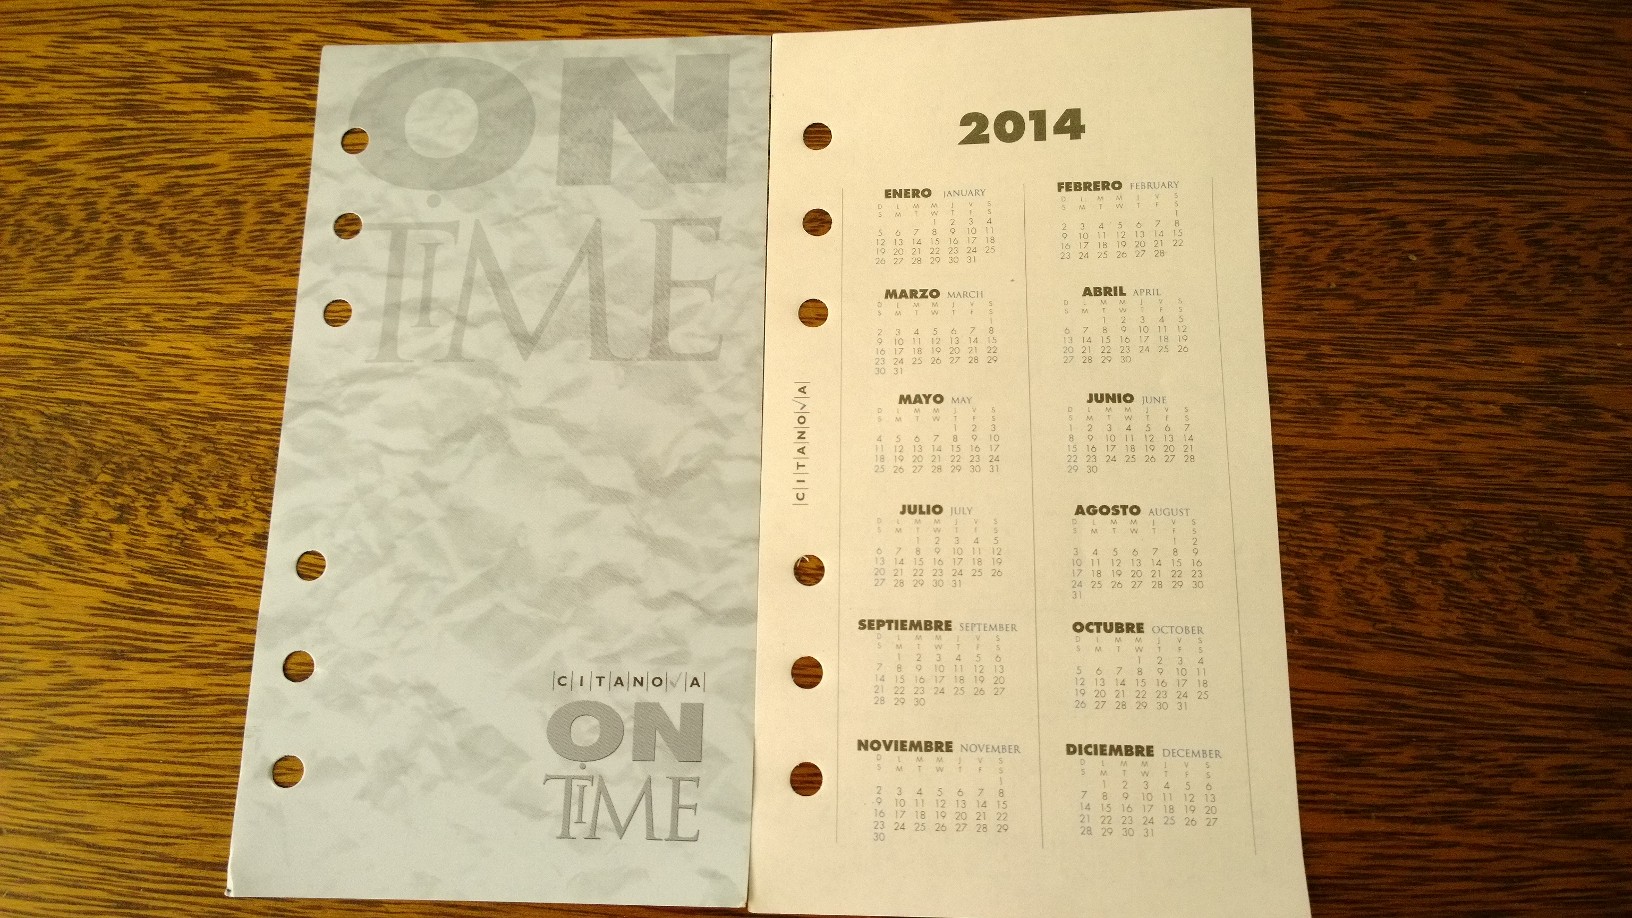 Agenda 2014 modelo On Time. Utilizo este modelo desde hace una década y media para registrar acontecimientos personales importantes.